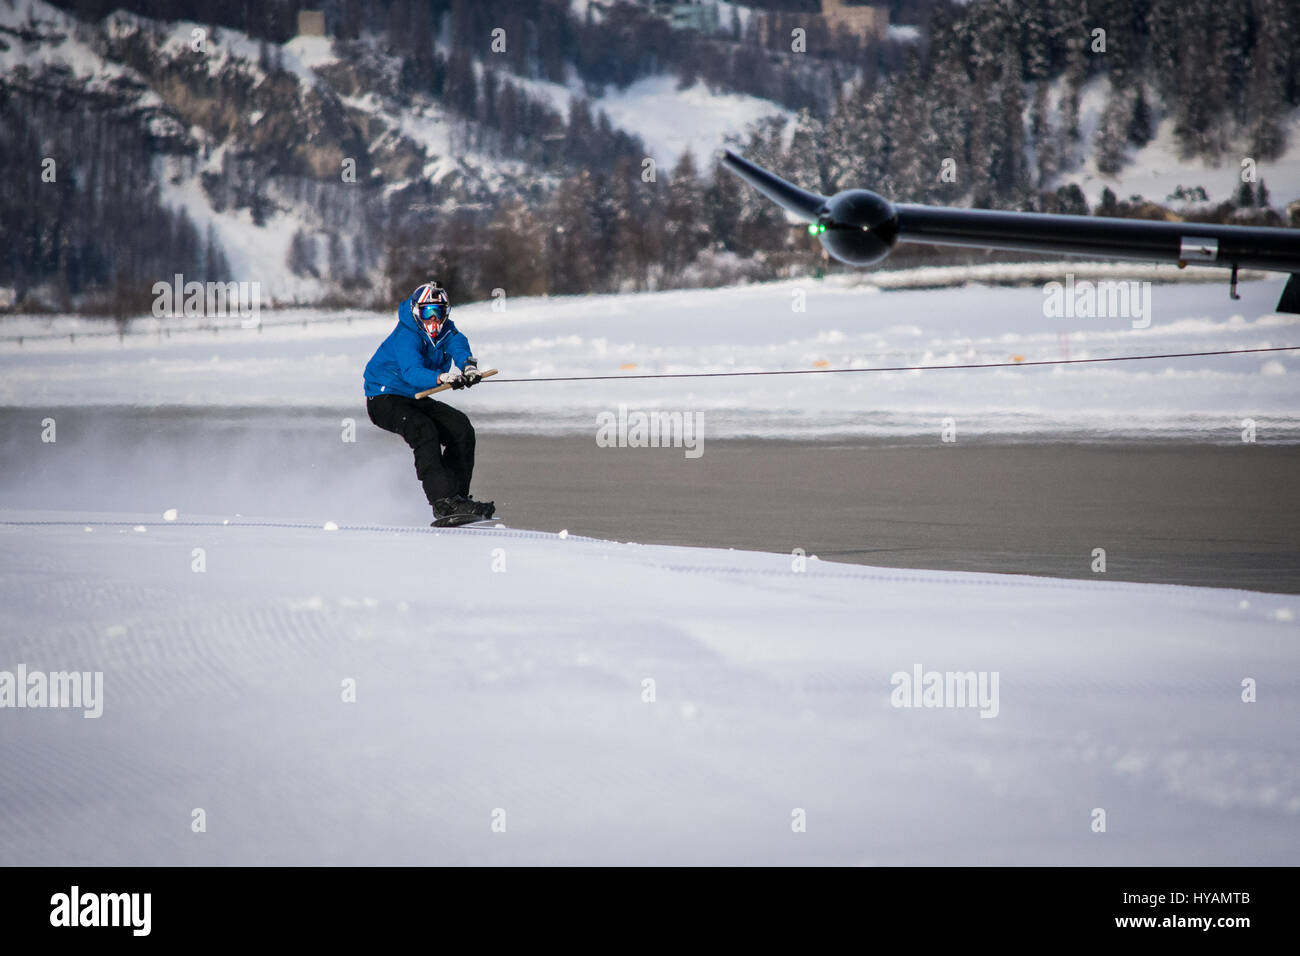 L'aéroport de l'Engadine, Suisse : un snowboarder britannique a atteint une vitesse de 78 miles par heure et est devenu la première personne à snowboard tout en être tirée par un avion commercial. Daredevil Jamie Barrow (22) de l'équipe de snowboard cross britannique est le meilleur snowboarder et terminé l'incroyable stunt par pendaison de l'aile d'un avion de l'aéroport de l'Engadine en Suisse. Les images montrent comment Jamie habilement sur la snowboarded snowy bord de la piste, malgré la vitesse frénétique de l'avion était en voyage. Banque D'Images